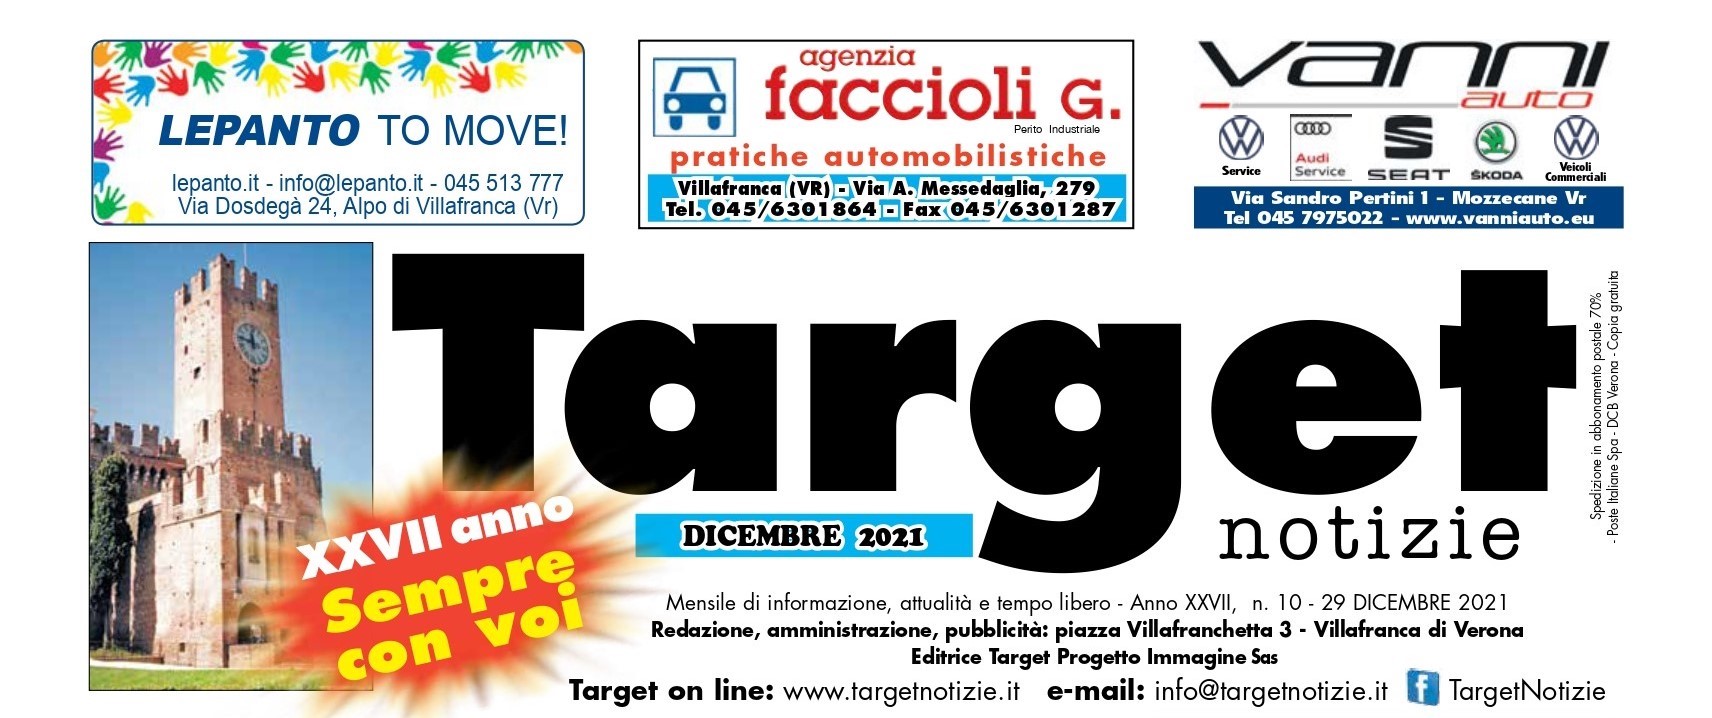 Target Notizie entra da oggi nella famiglia de L’Adige di Verona